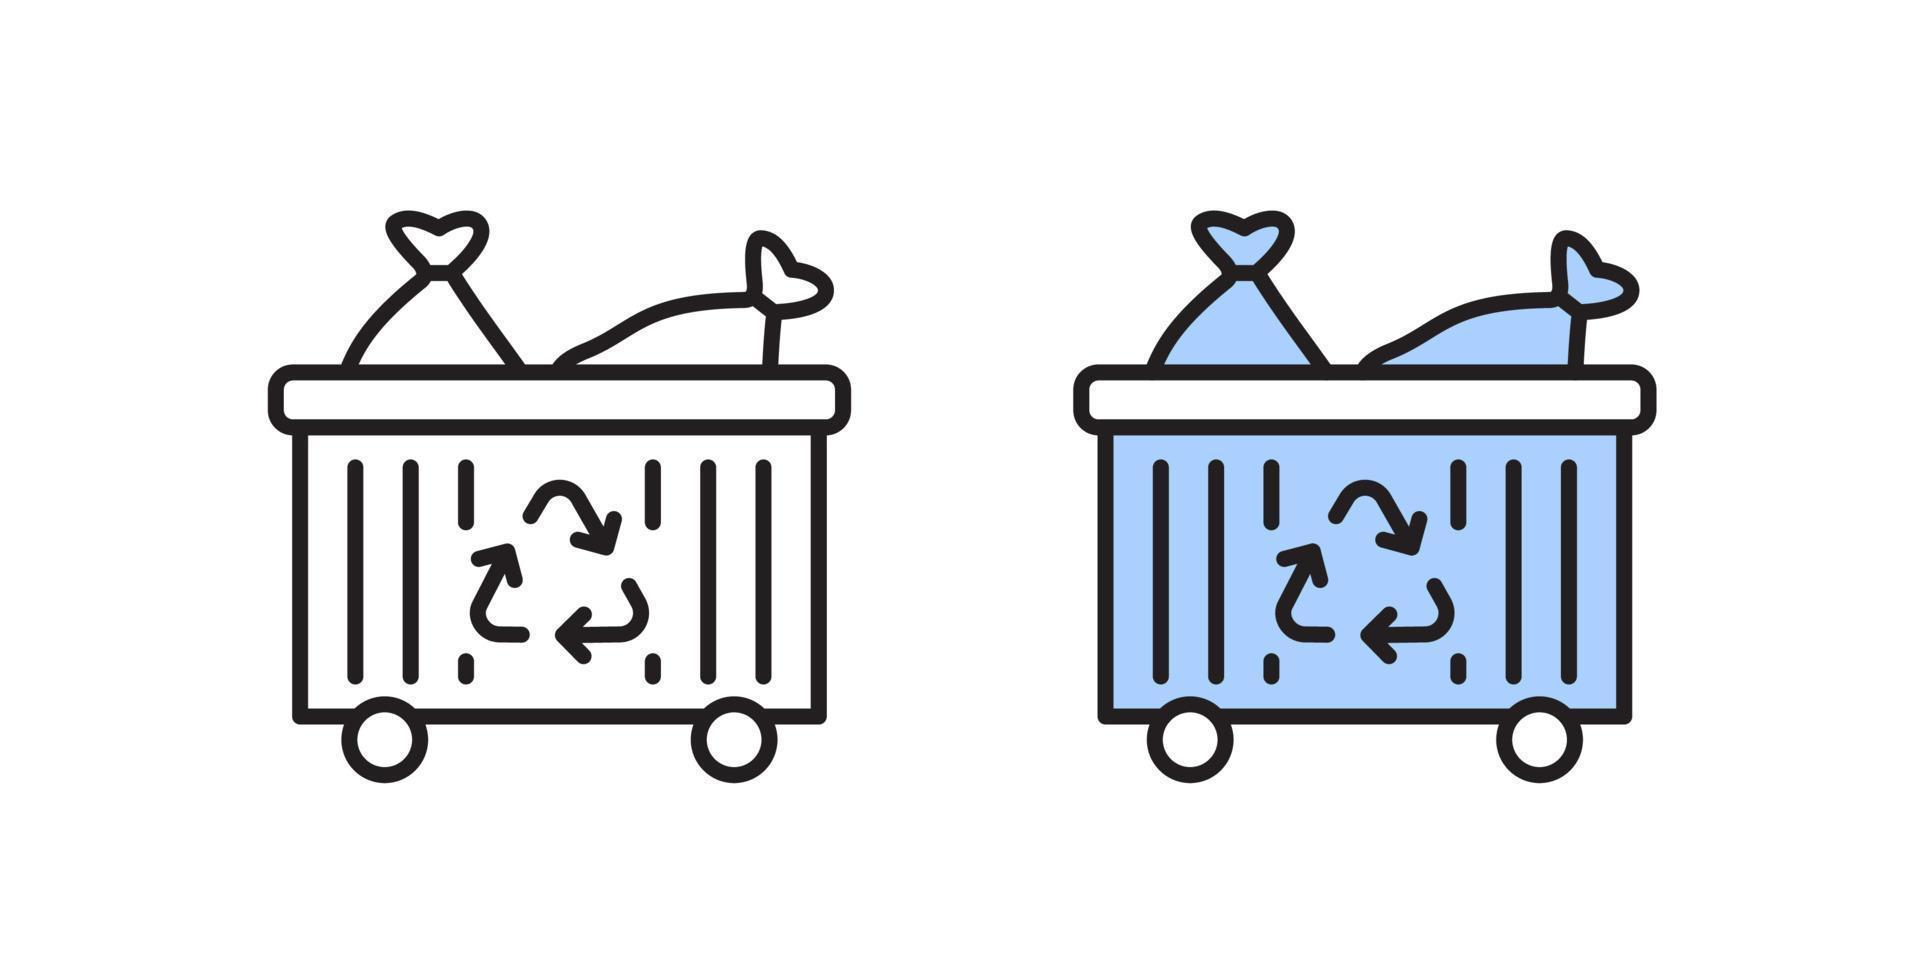 icono del contenedor de basura. concepto de reciclaje de residuos. símbolo lineal sencillo. vector